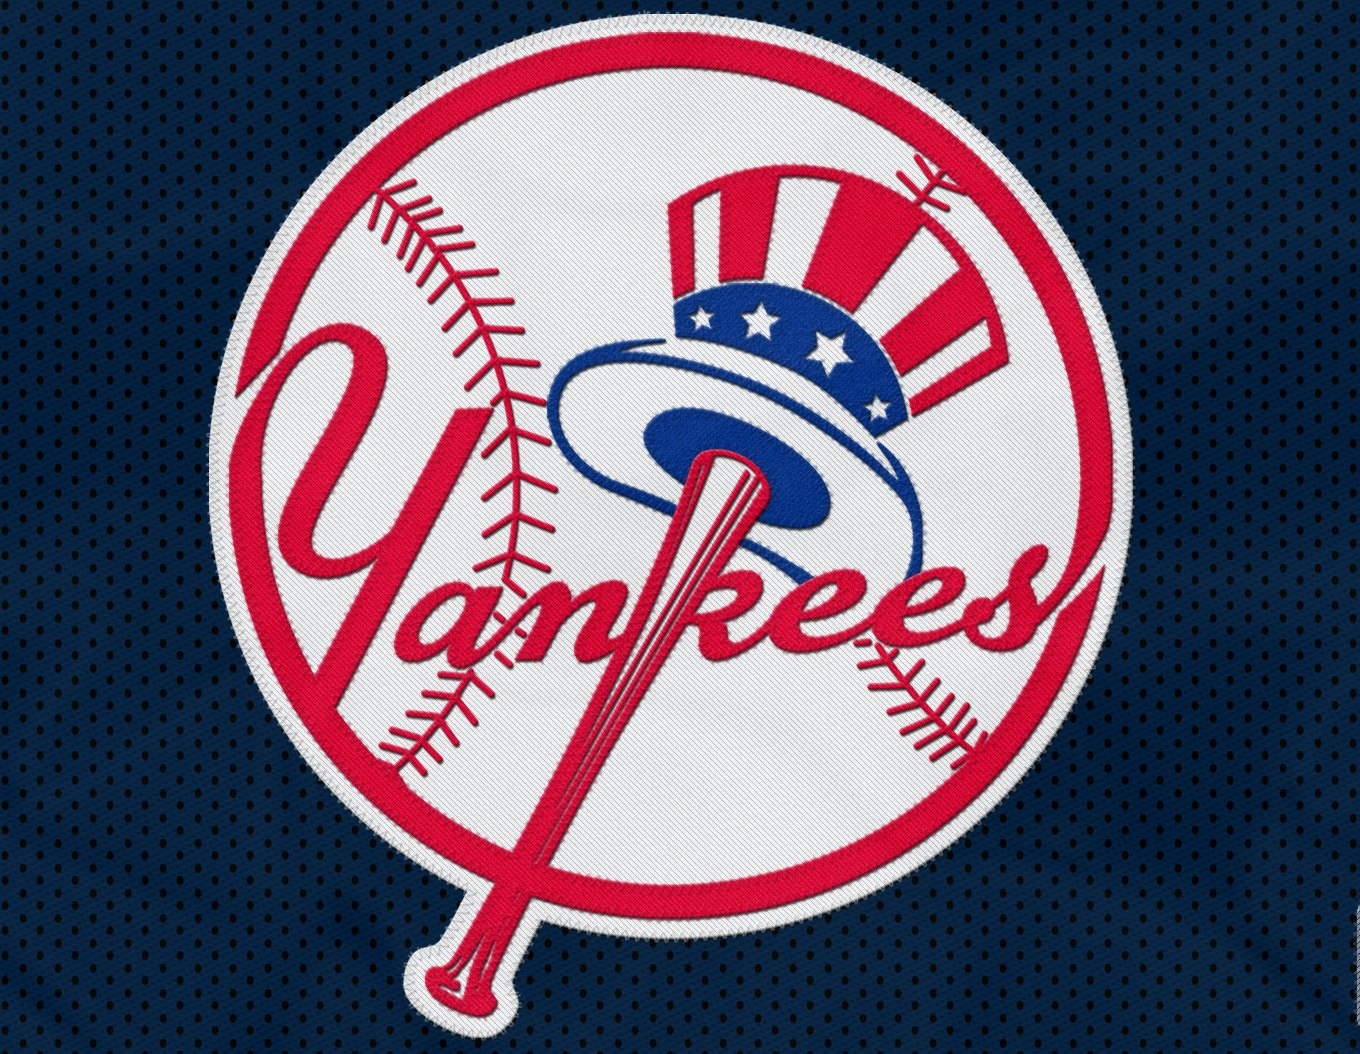 New York Yankees Wallpaper Screensavers